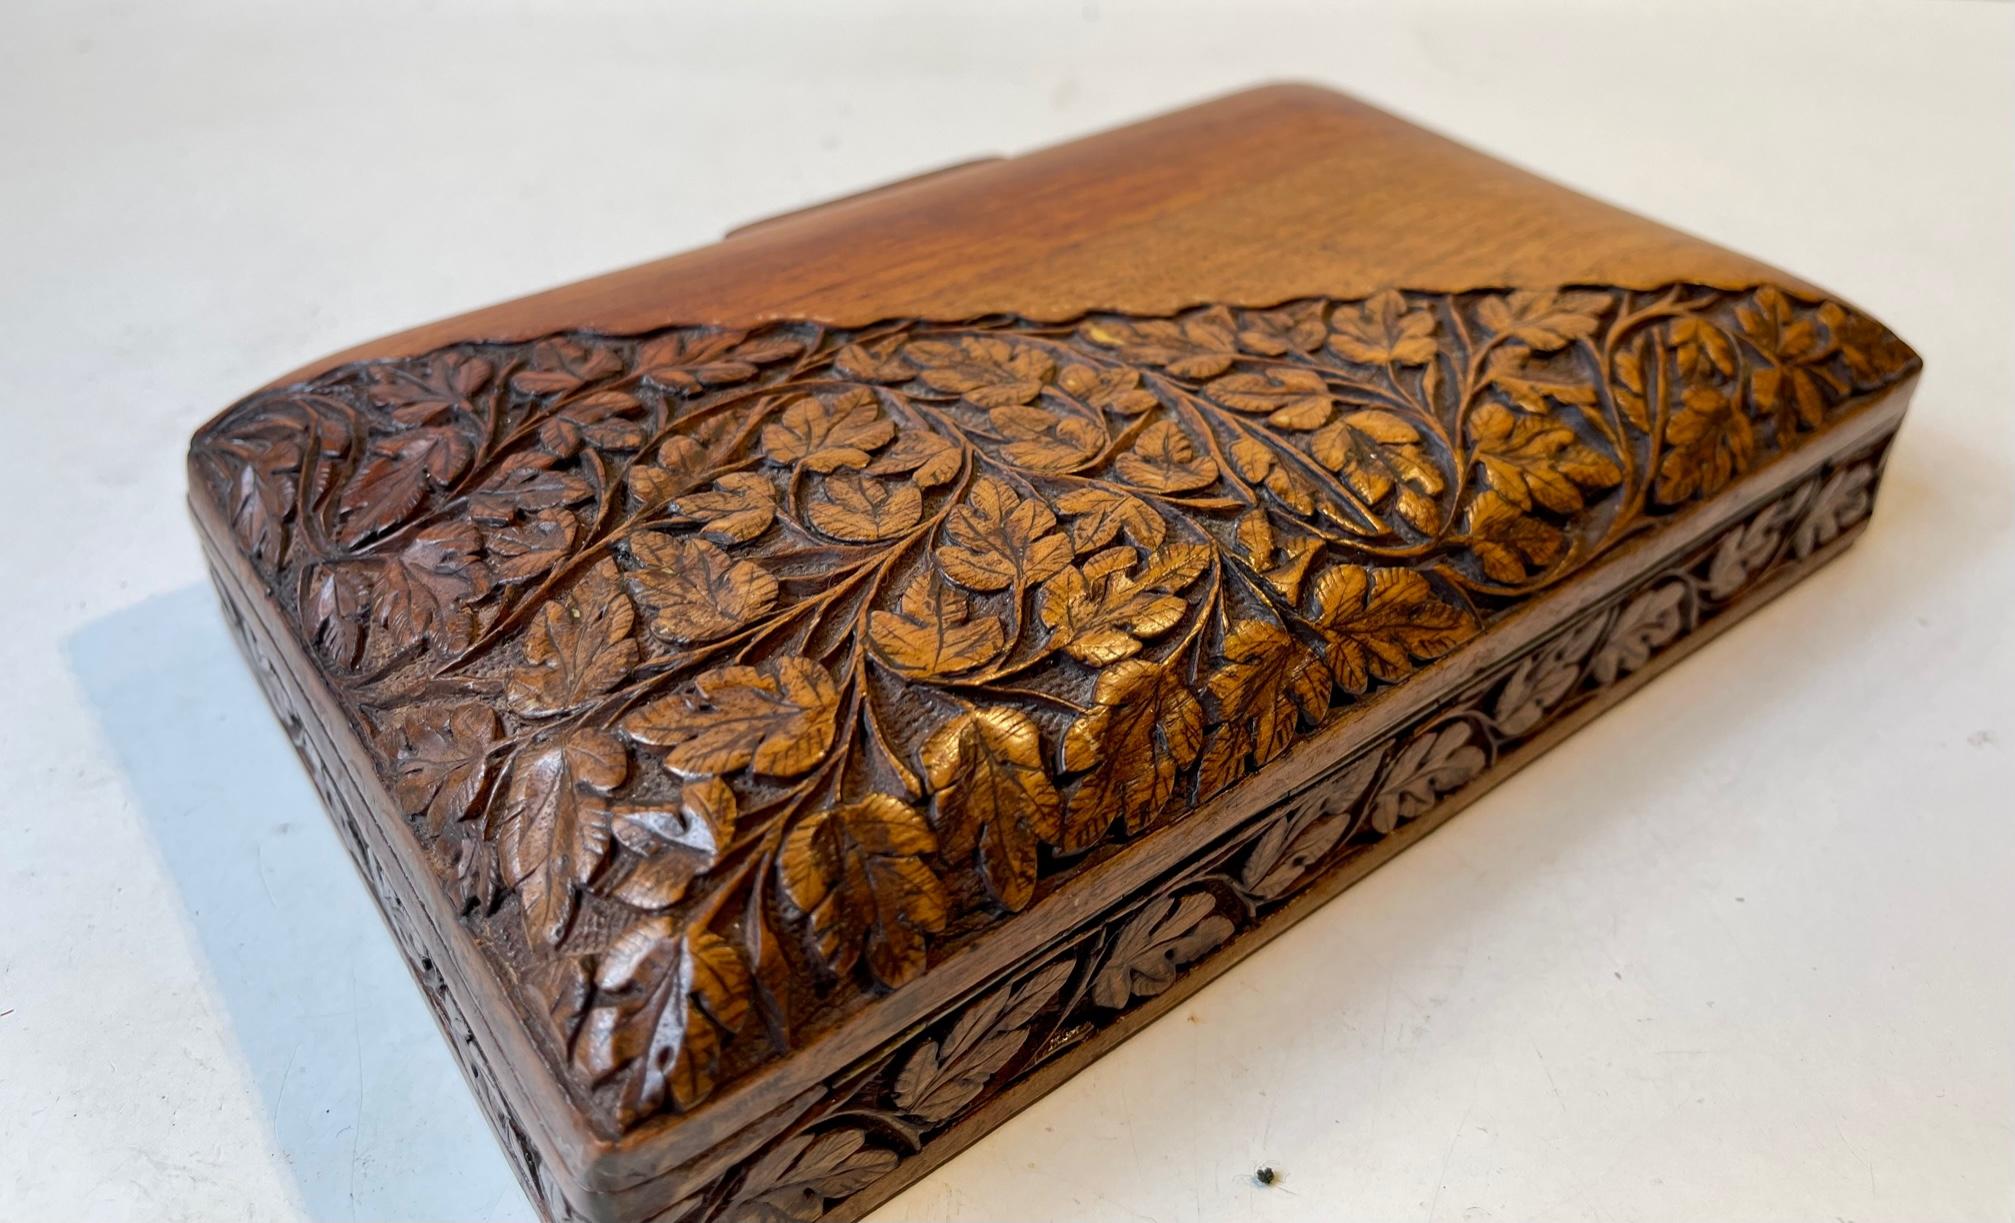 Dekoratives Eichenholzkästchen, das auf einer Hälfte aufwändig mit Eichenblättern verziert ist. In den 1920er Jahren in Skandinavien handwerklich hergestellt. Geeignet für Tabak, Schmuck oder Spielkarten. Abmessungen: 20x12,5x5 cm.